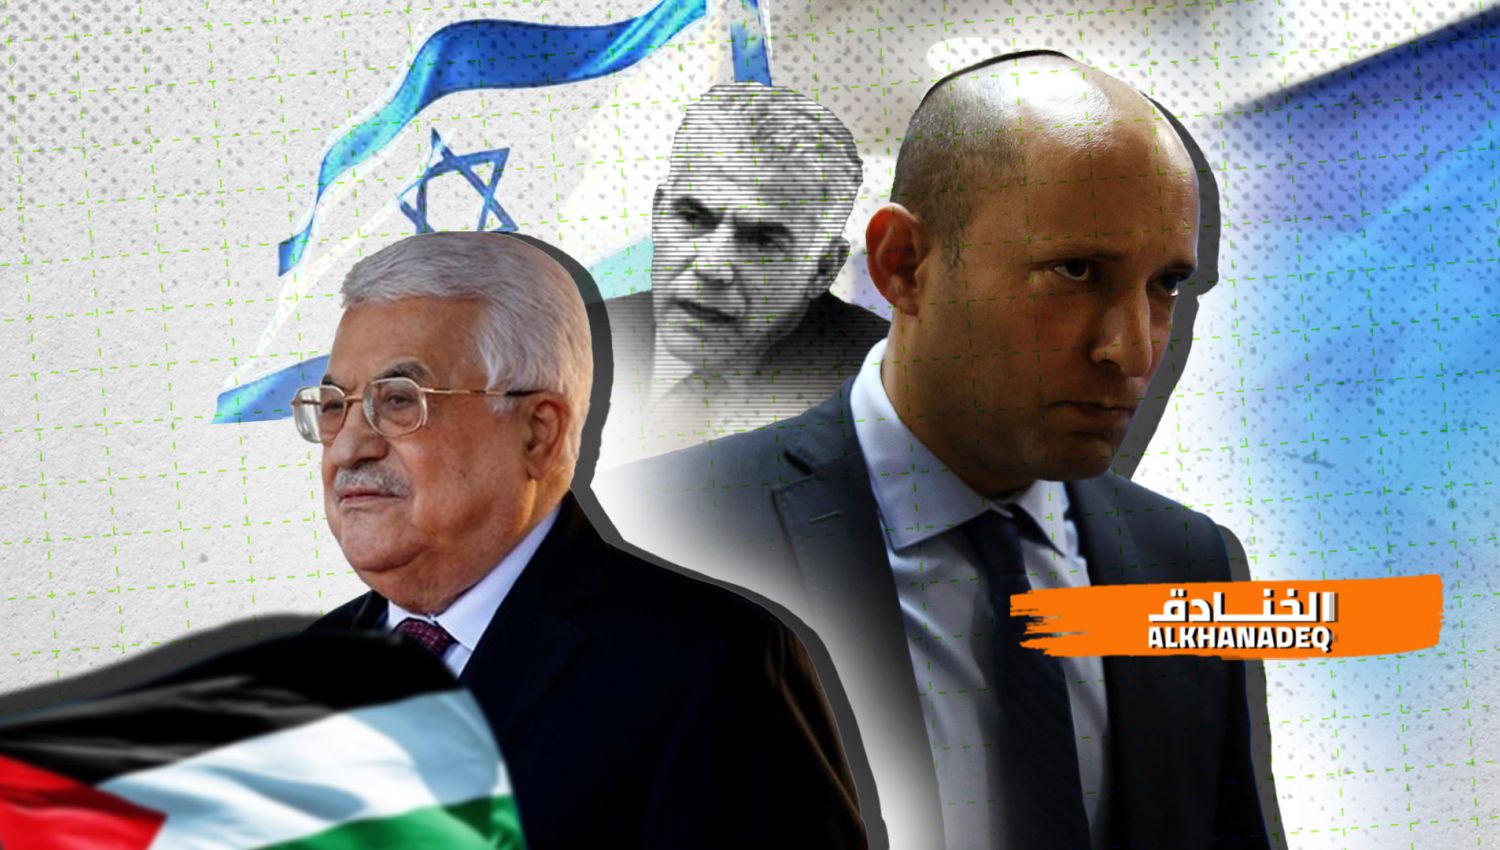 "إسرائيل اليوم": إسرائيل هي المتضررة من القتال القانوني